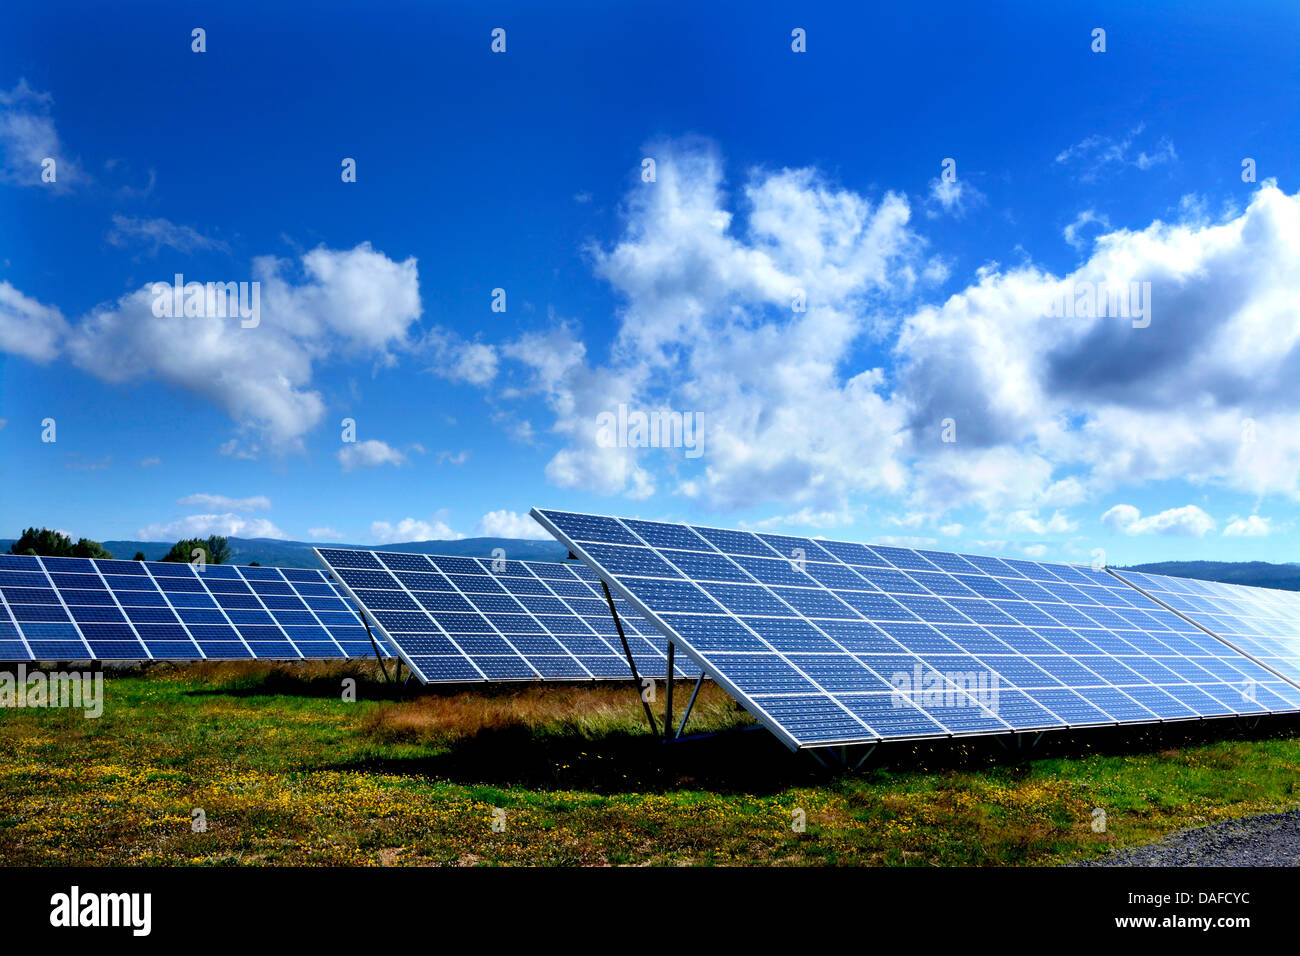 Panneaux solaires pour produire de l'énergie renouvelable dans un grand tableau à la ferme solaire. L'Auvergne. France Banque D'Images